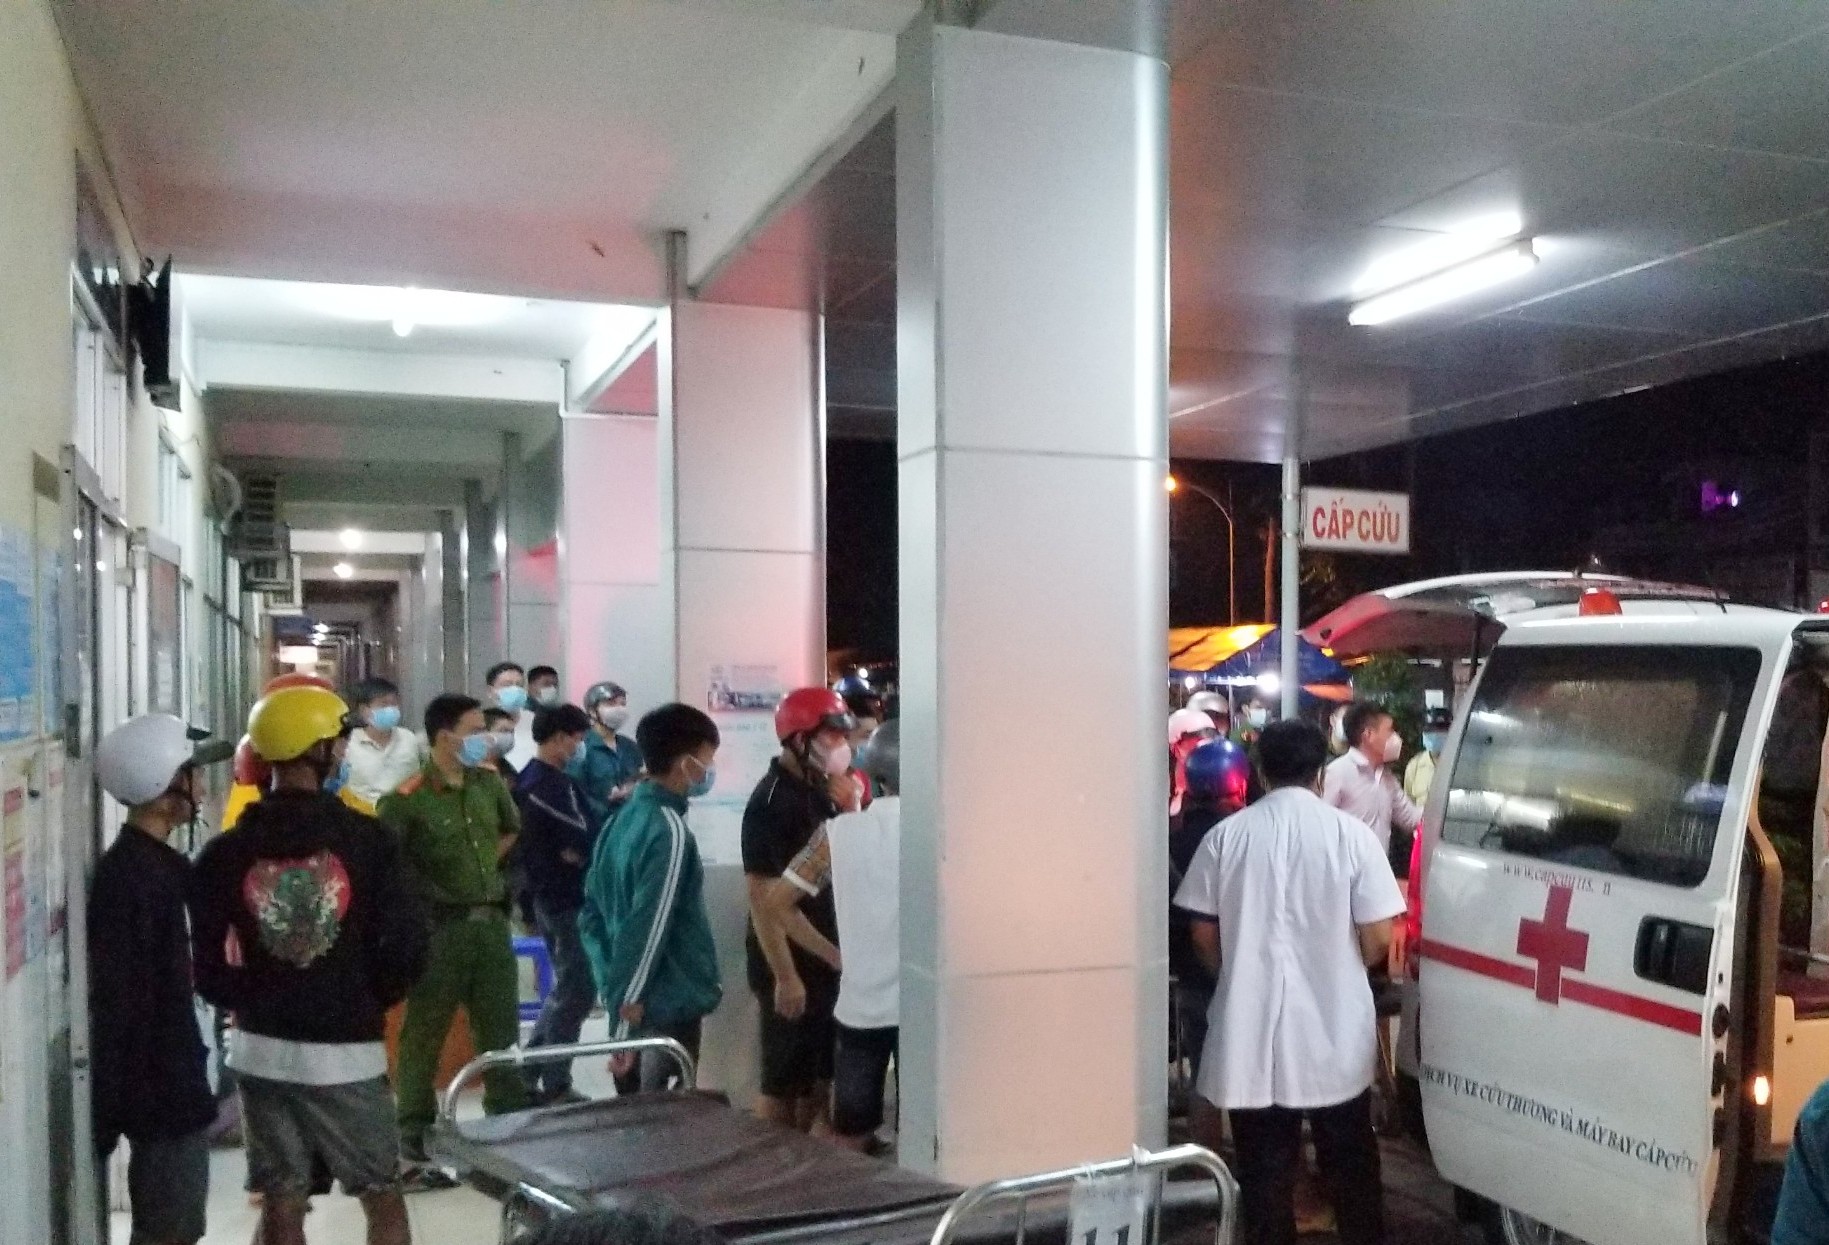 Nam thanh niên cầm hung khí xông vào bệnh viện truy sát ở Đồng Tháp - Ảnh 1.